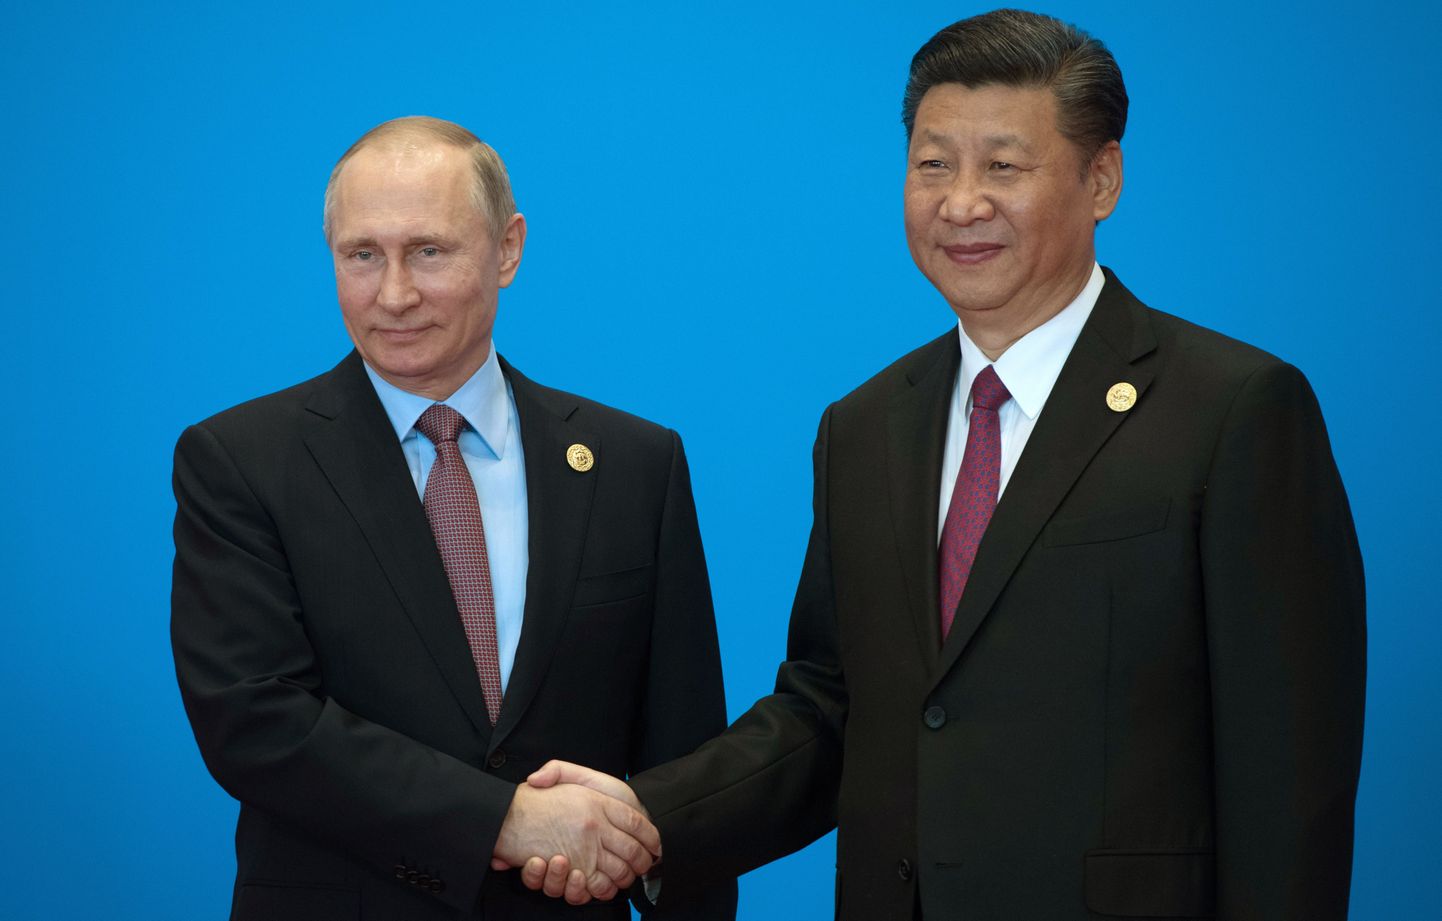 Suured sõbrad. Hiina presidendiga kätt suruv Vladimir Putin oli üks neist, kes saabus Pekingisse Siiditee foorumile.